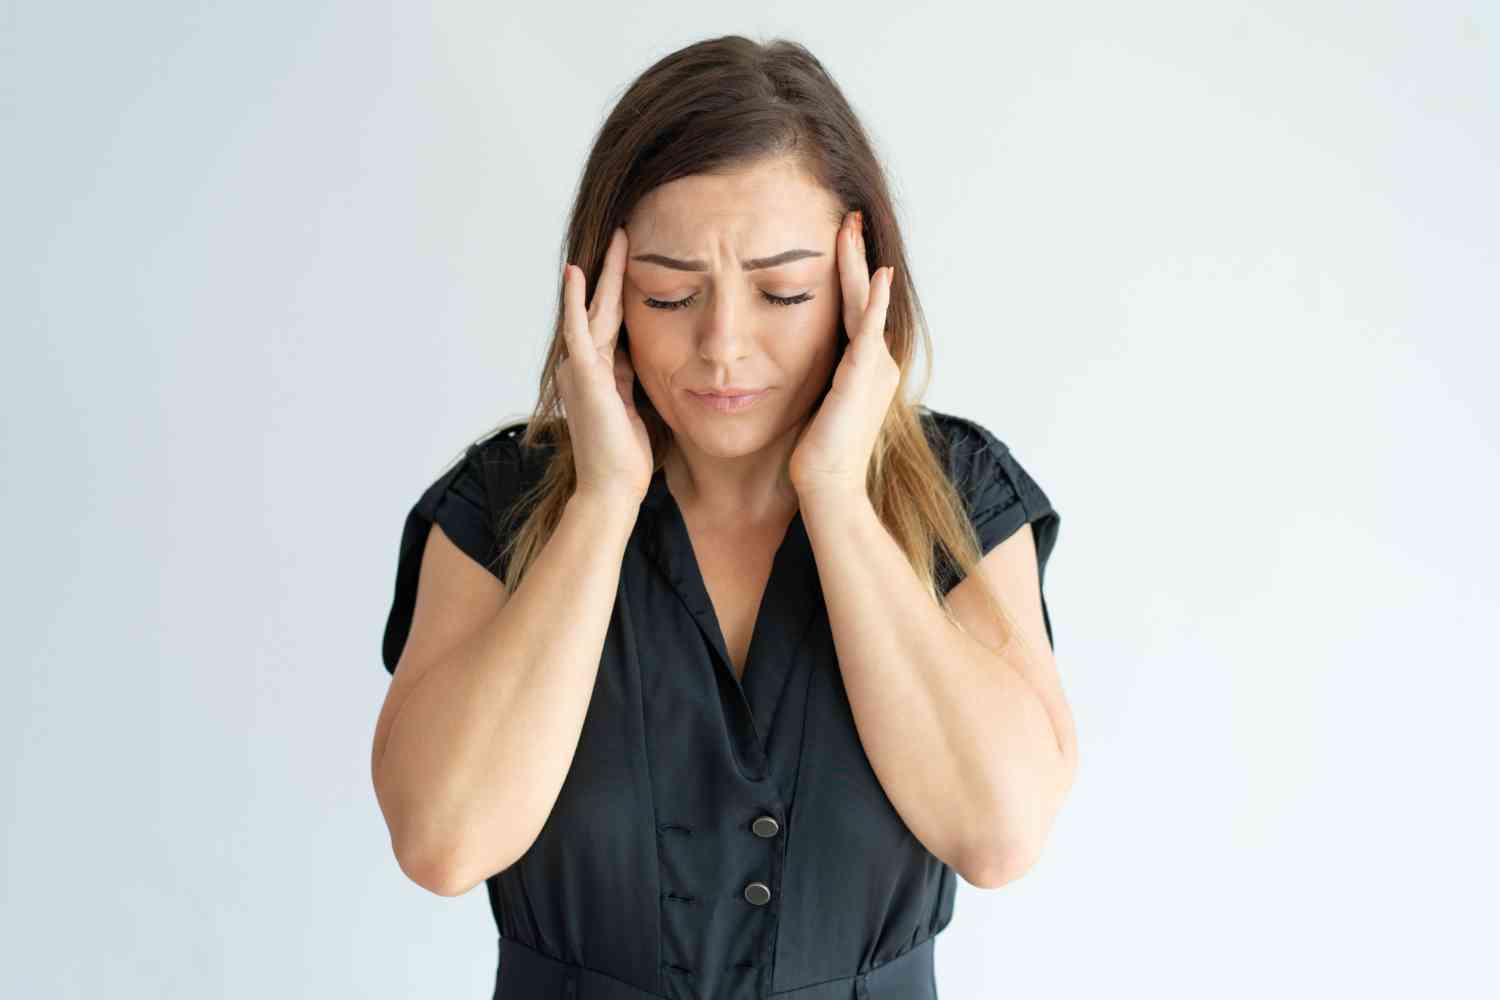 La migraña o los dolores de cabeza frecuentes son un síntoma de anemia